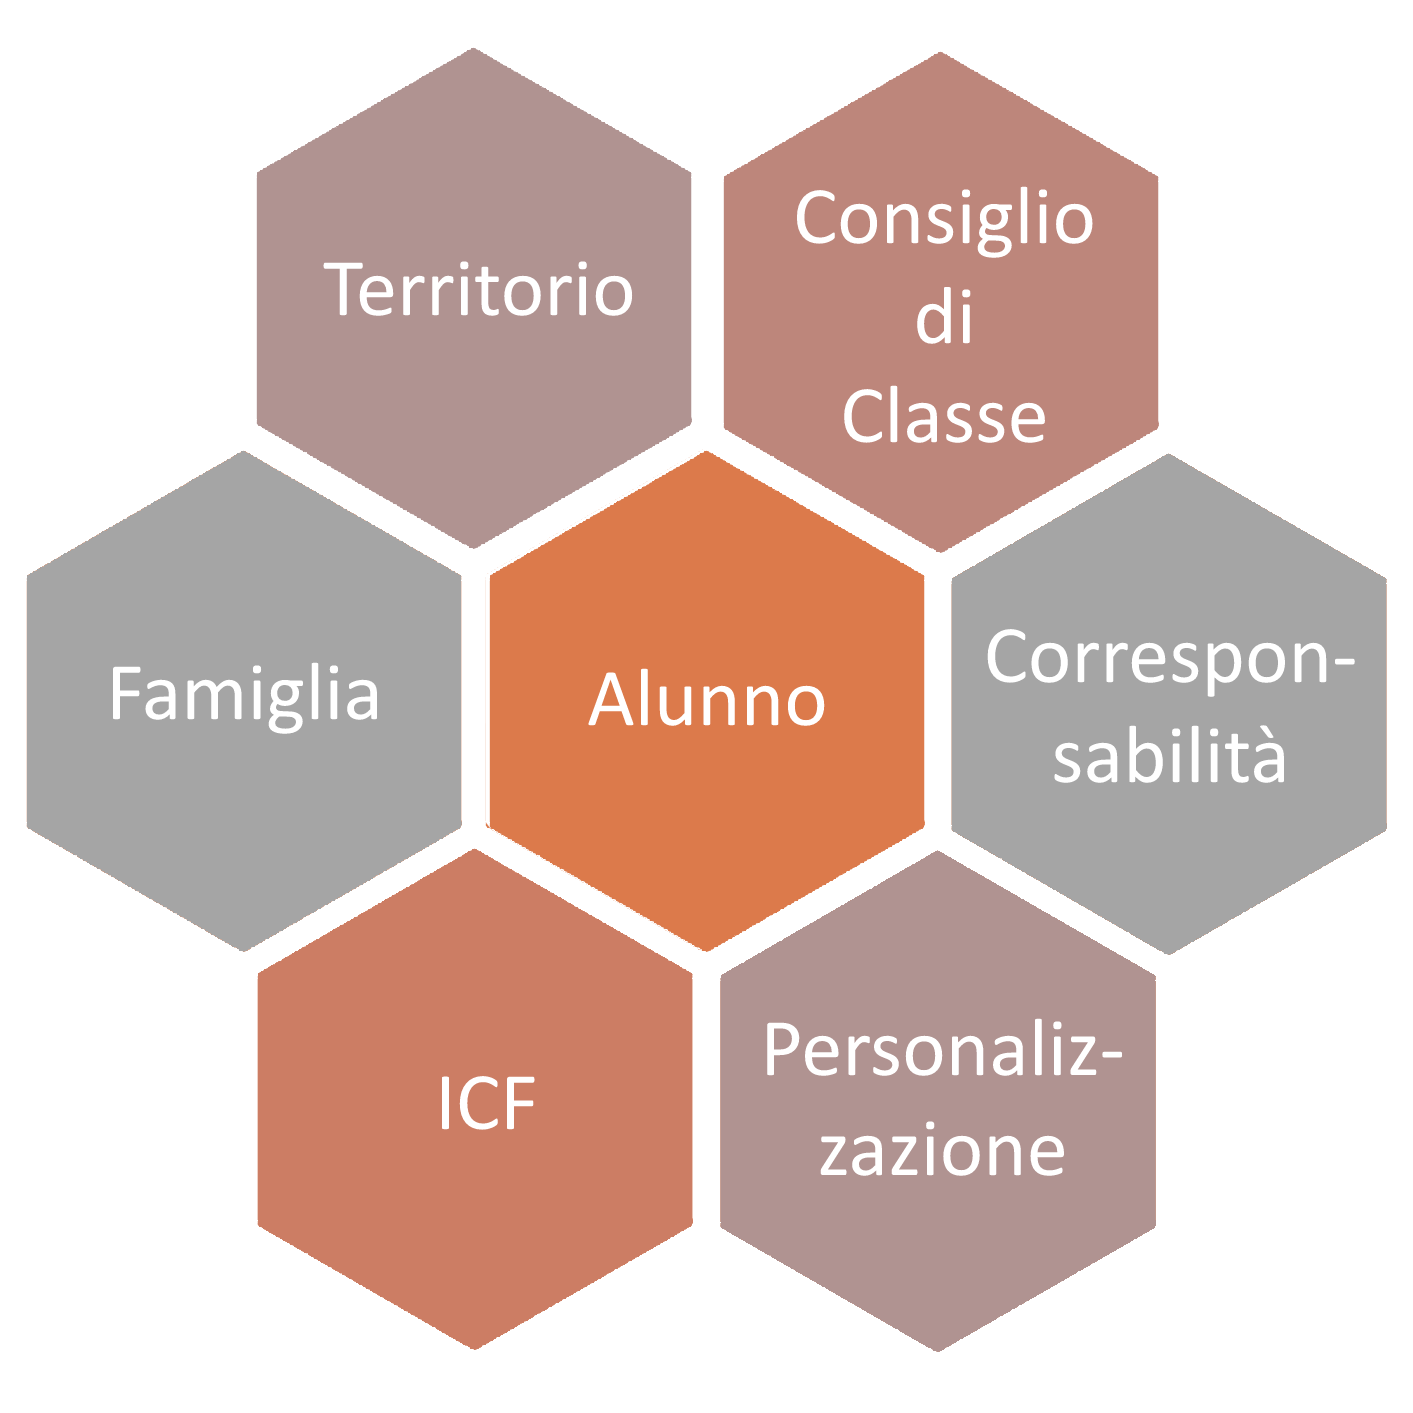 immagine grafica con al centro la parola Alunno e intorno le seguenti parole: Territorio, Consiglio di Classe, Corresponsabilità, personalizzazione, ICF, Famiglia, Territorio